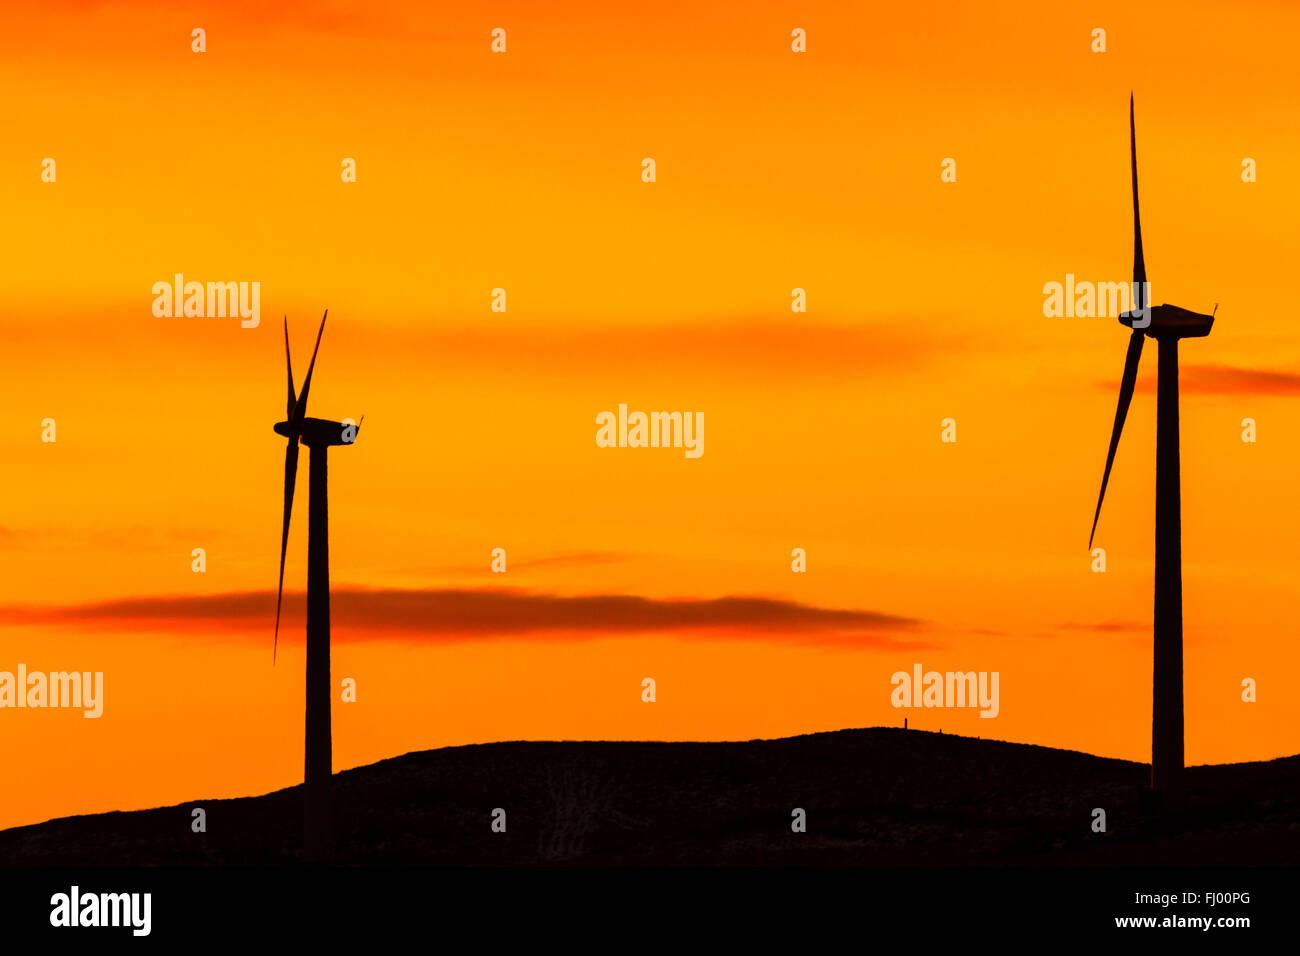 Silhouette de deux éoliennes contre un ciel orange Banque D'Images